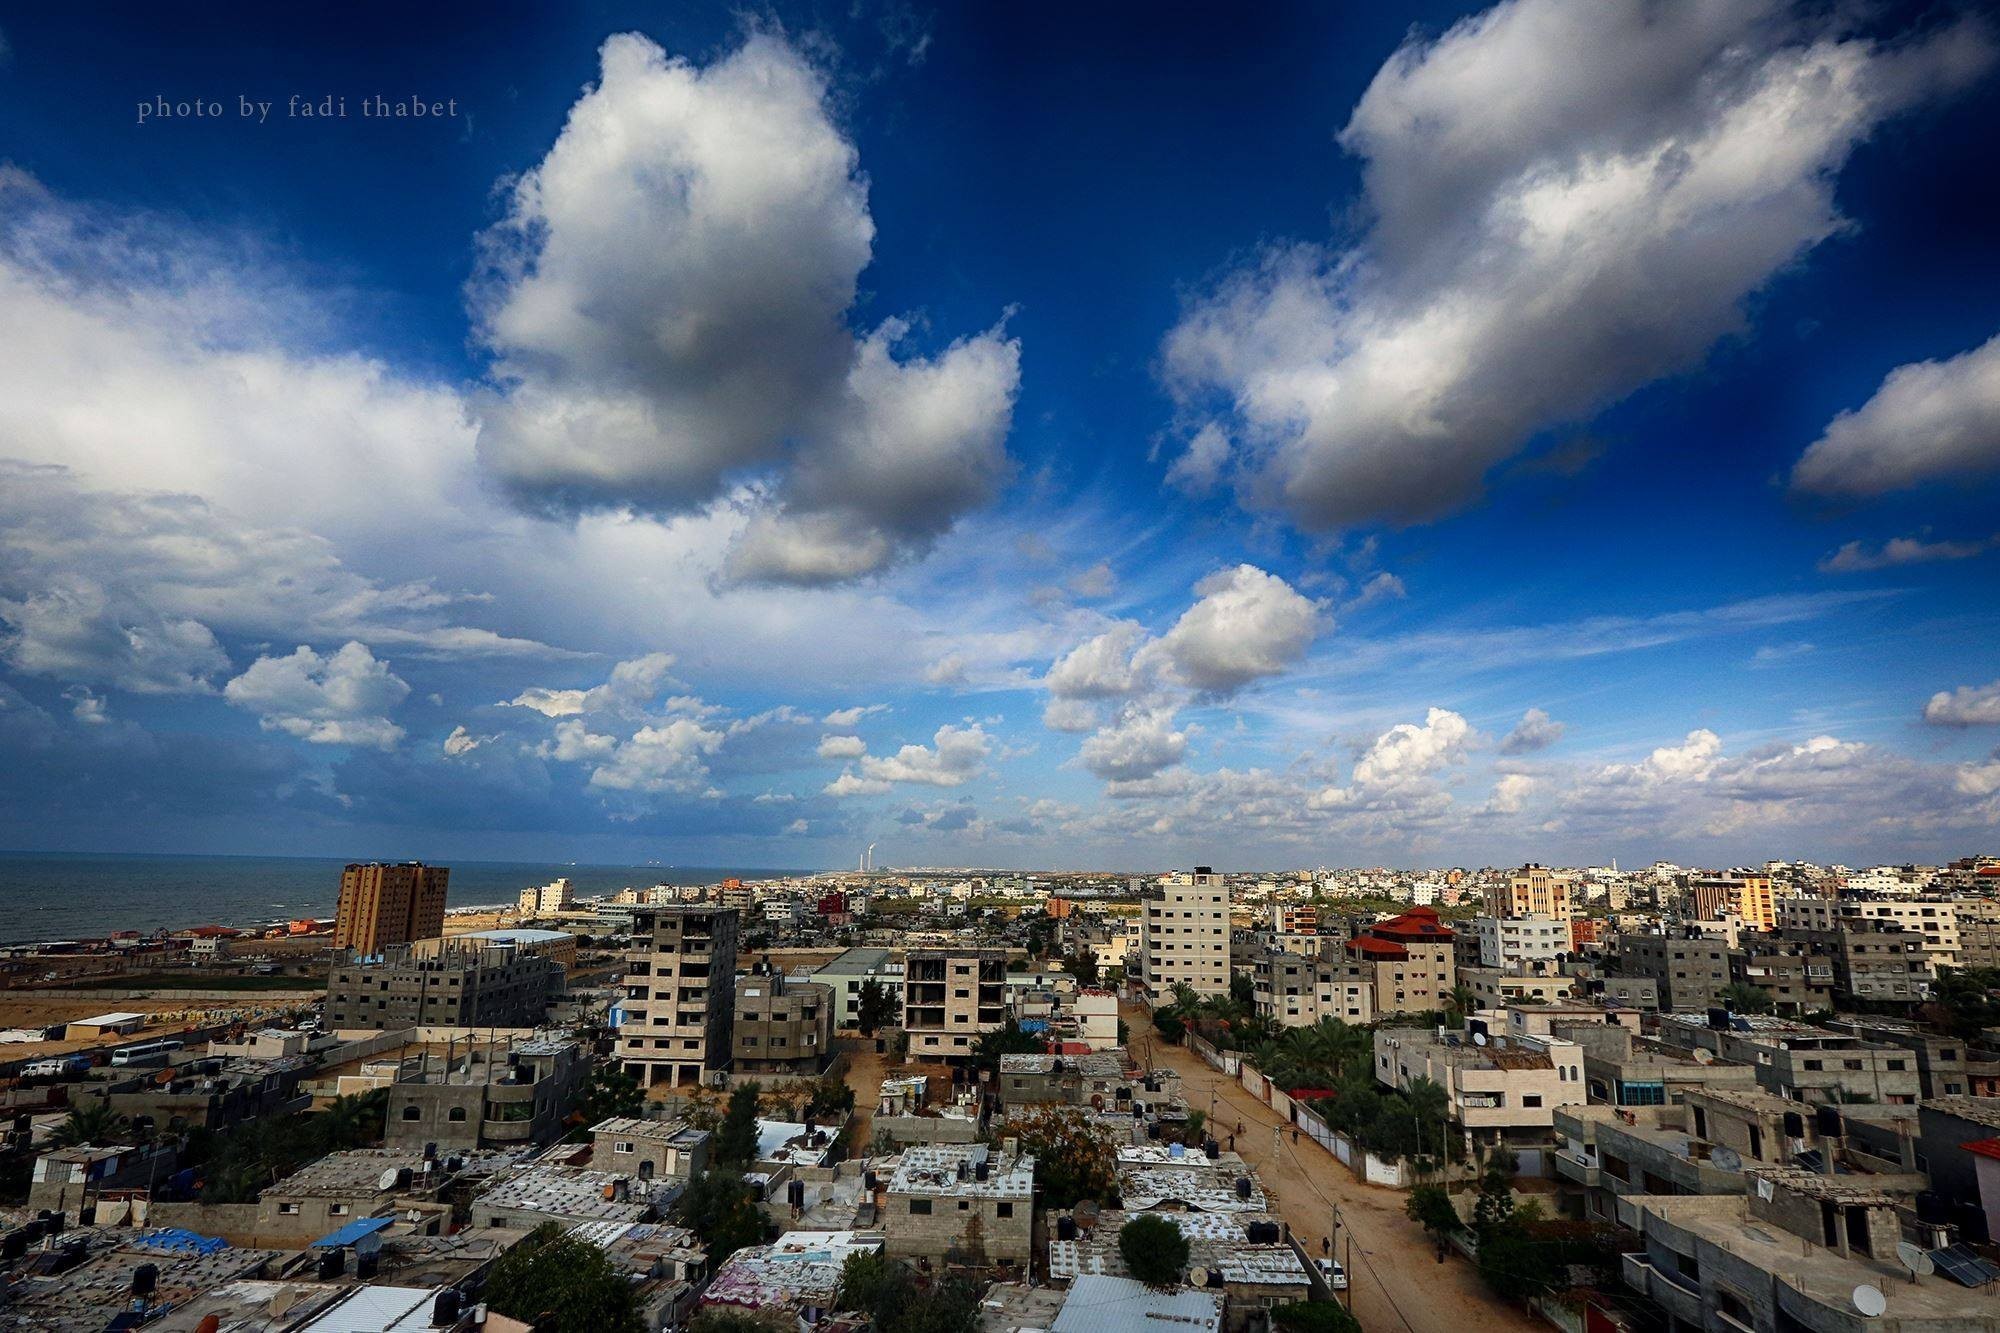 قطاع غزة في يوم غائم